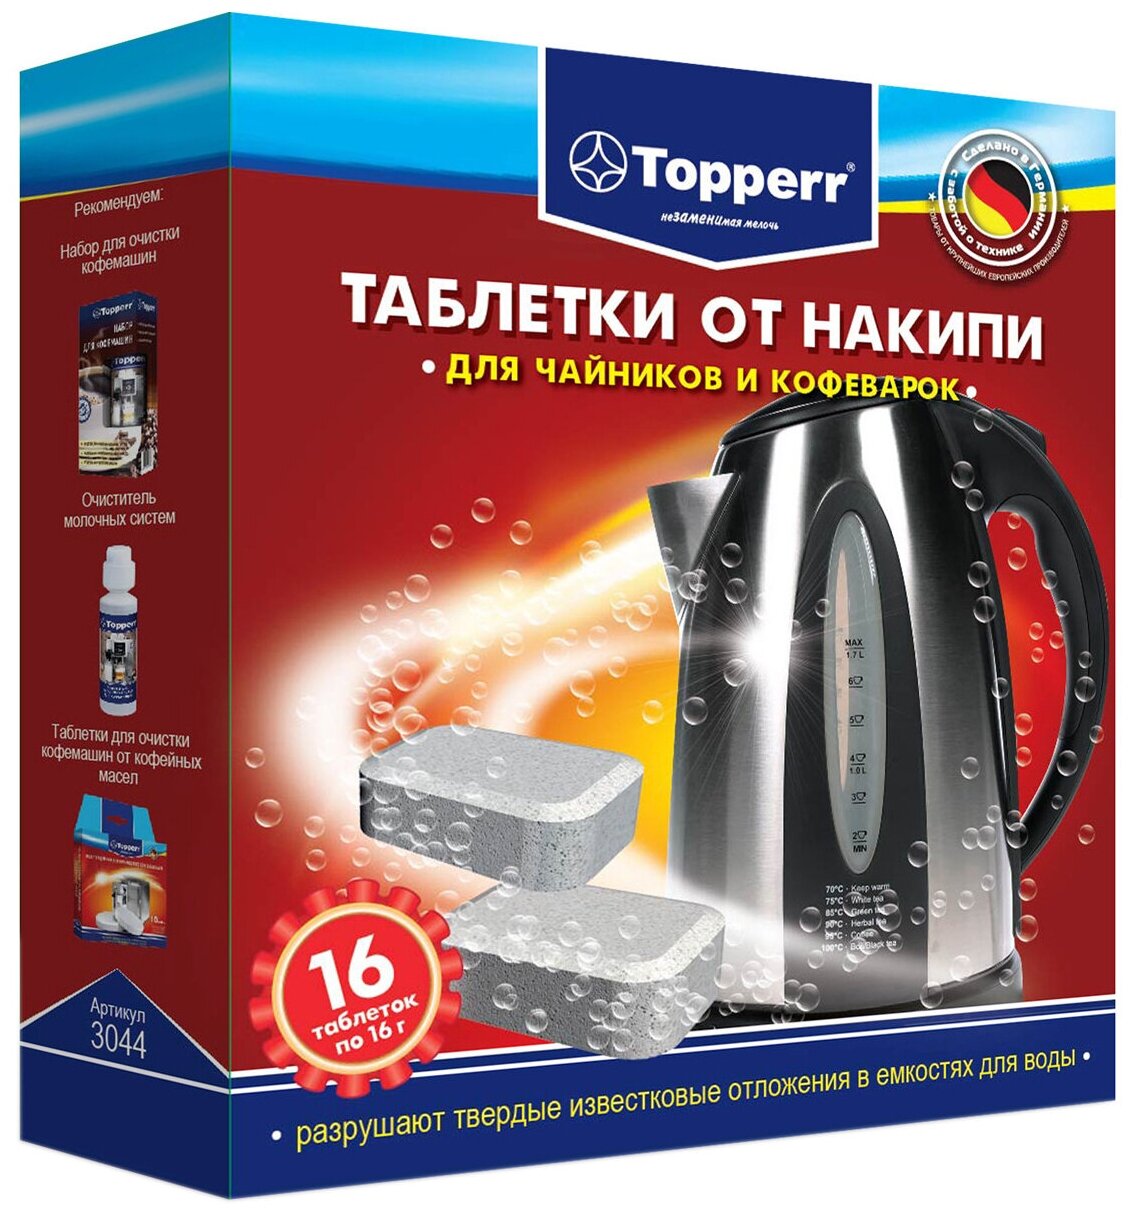 Таблетки Topperr от накипи для чайников и кофеварок 3044 16 шт